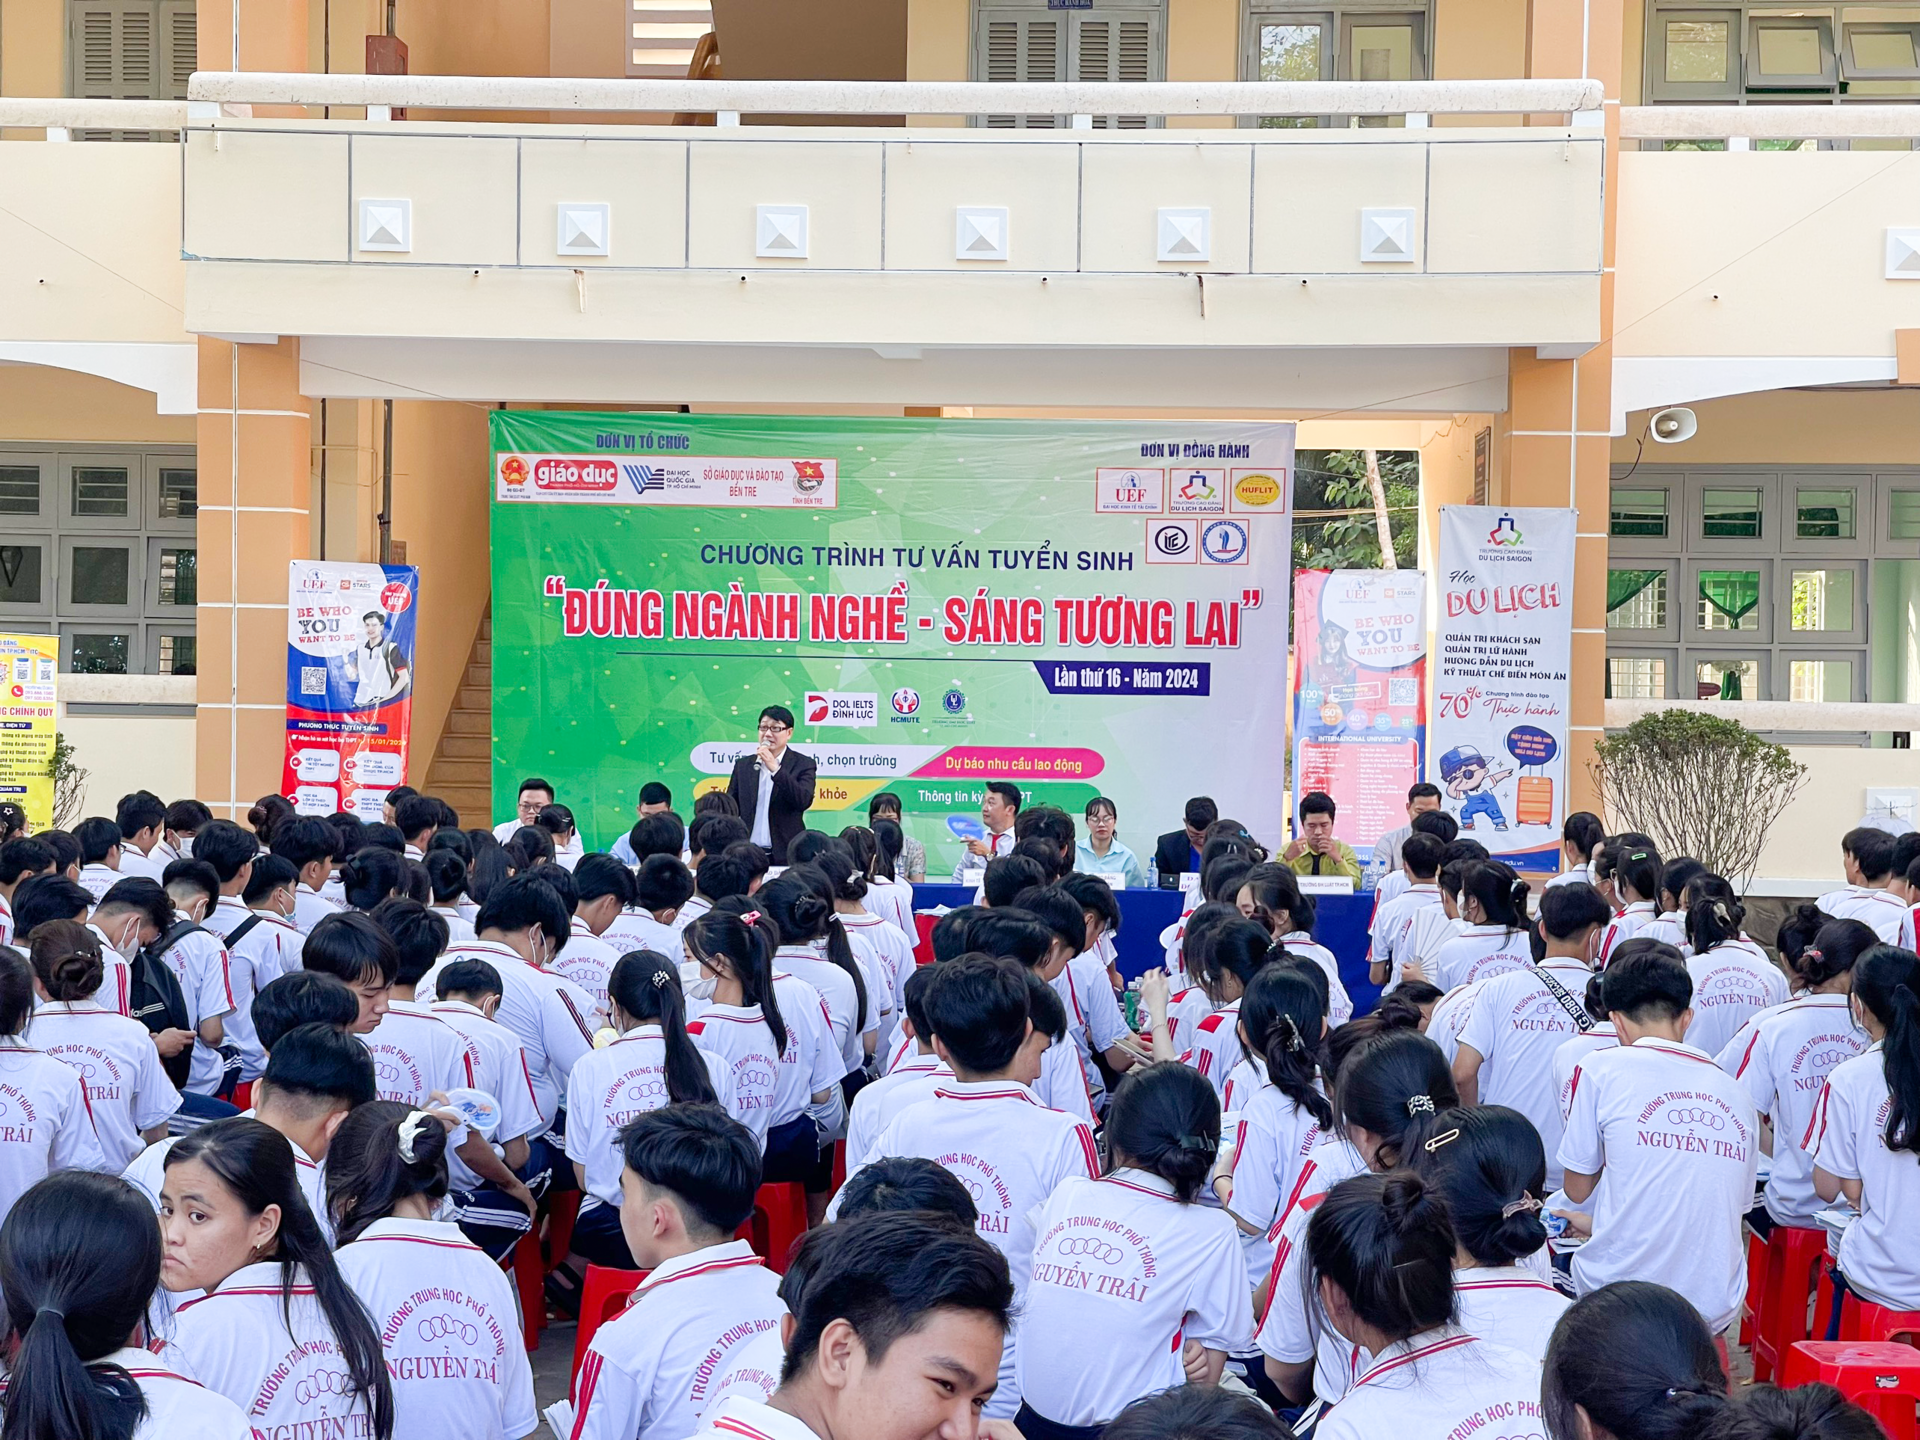 Trường ITC tham dự chương trình tư vấn tuyển sinh "Đúng Ngành Nghề - Sáng Tương Lai" tại các trường THPT tỉnh Bến Tre